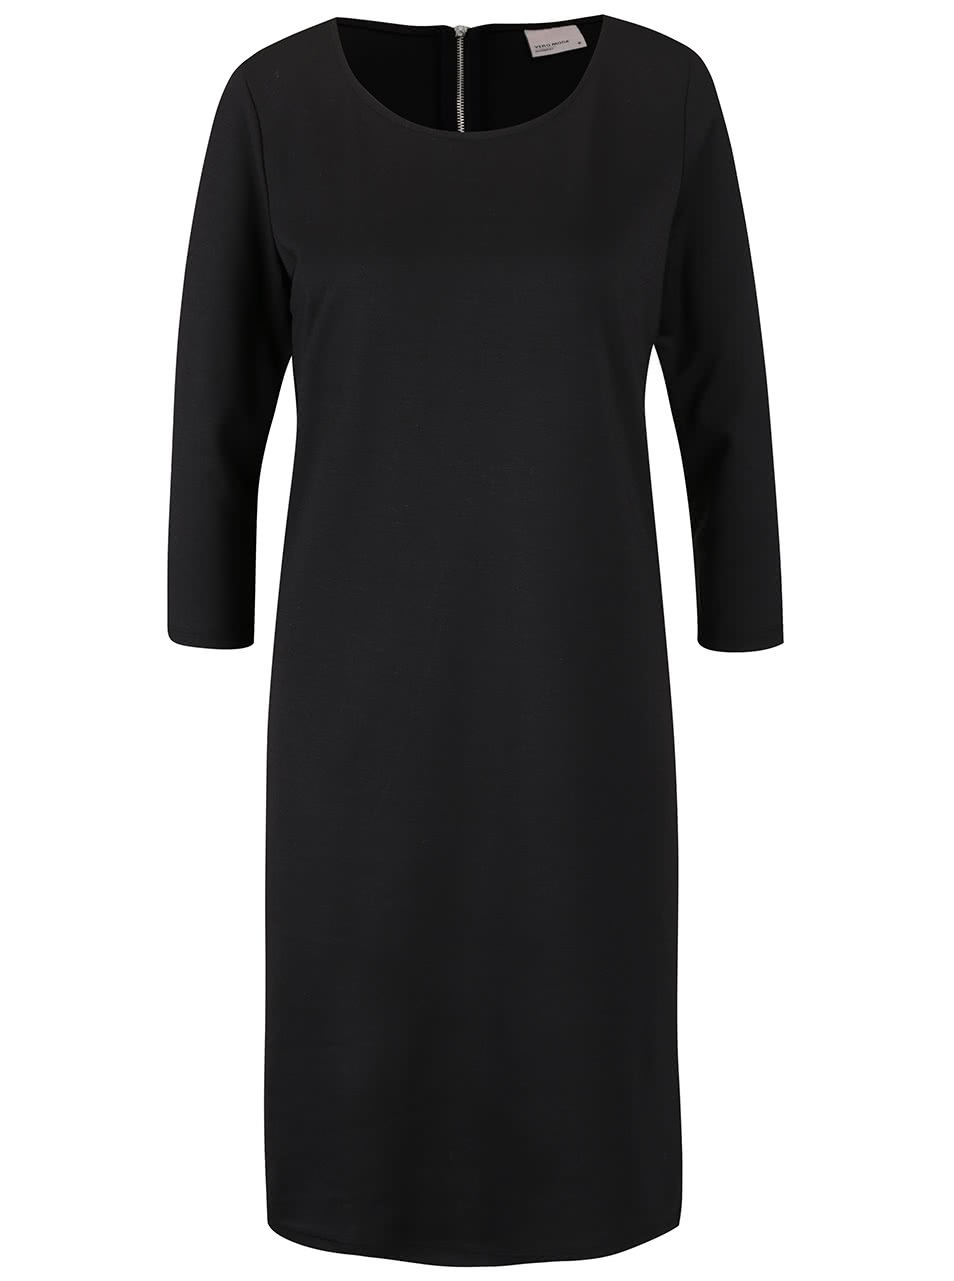 Černé šaty s dlouhým rukávem Vero Moda Vigga